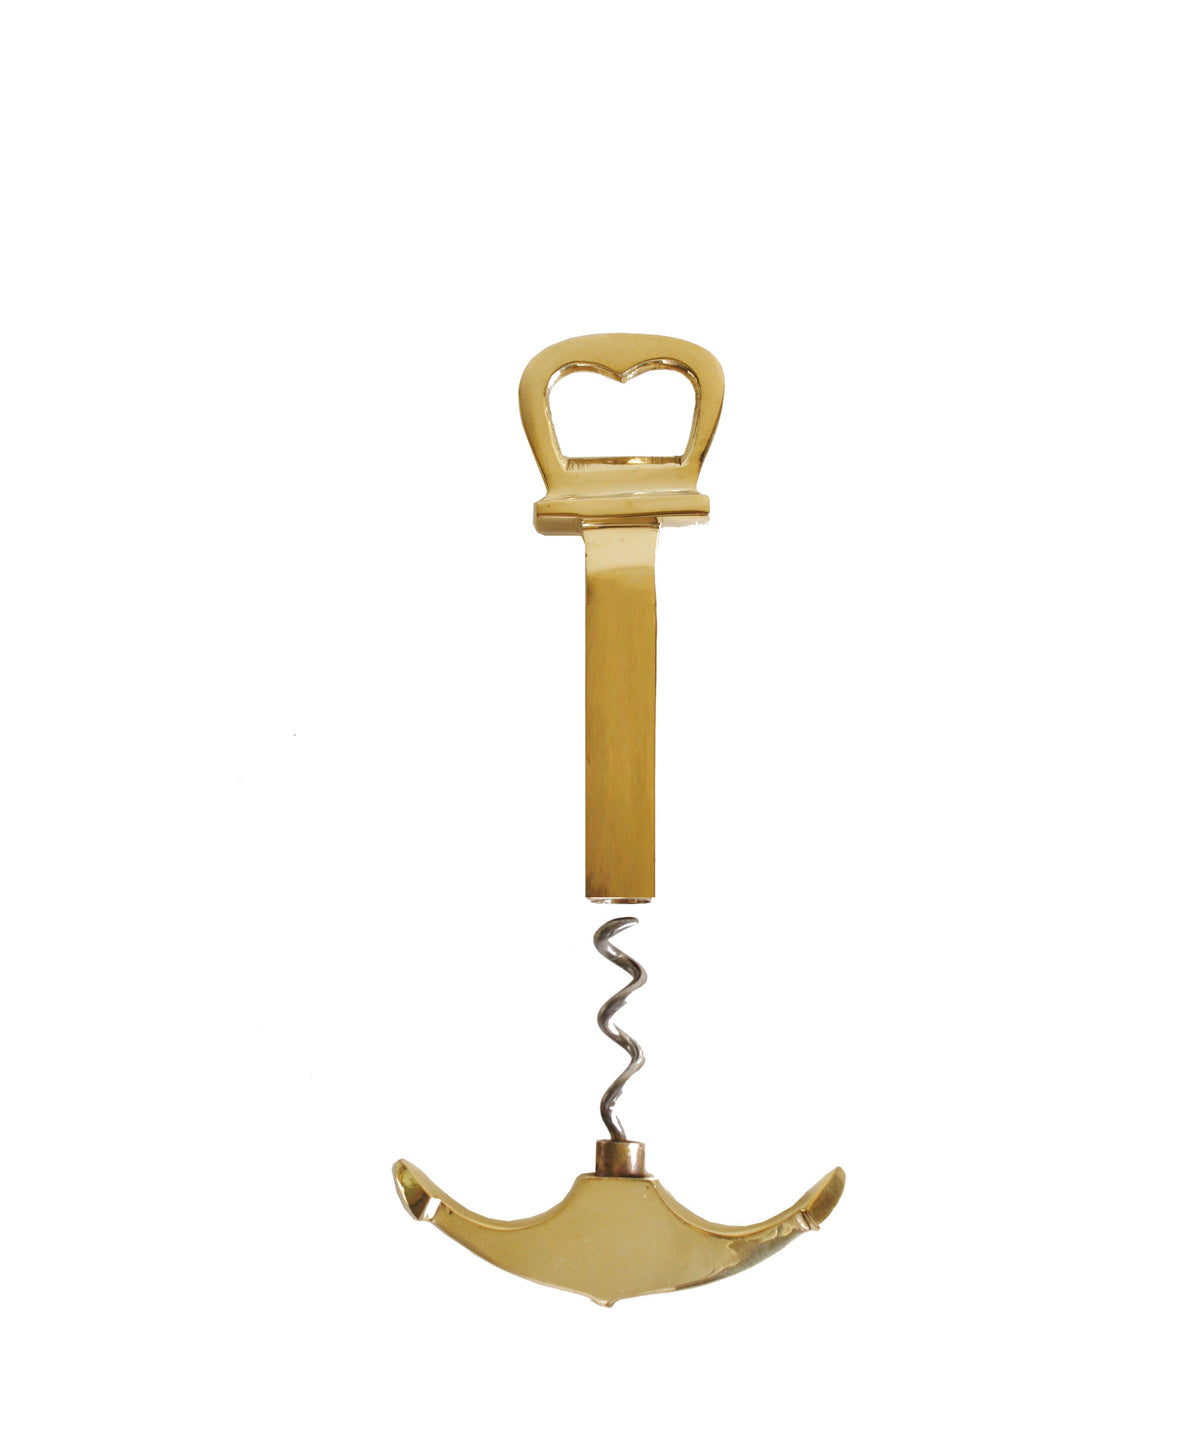 Anchor Bottle Opener in Brass - Bottle Cap Remover & Corkscrew in